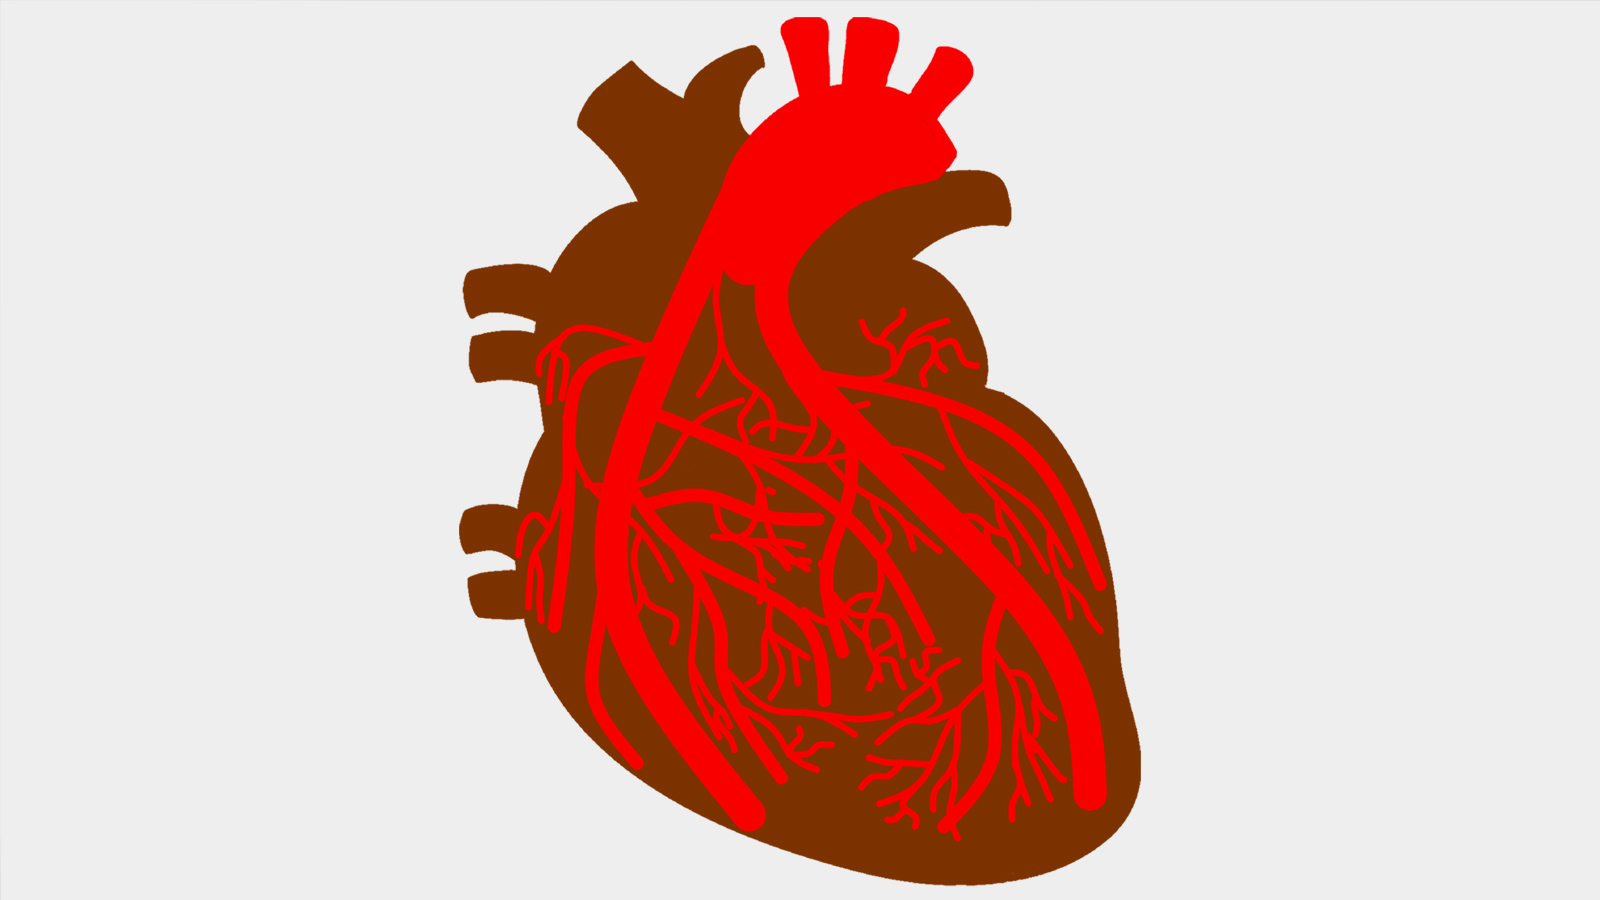  عدم انتظام ضربات القلب قد يسبب توقف القلب عن الضخ تمامًا (بيكسابي)